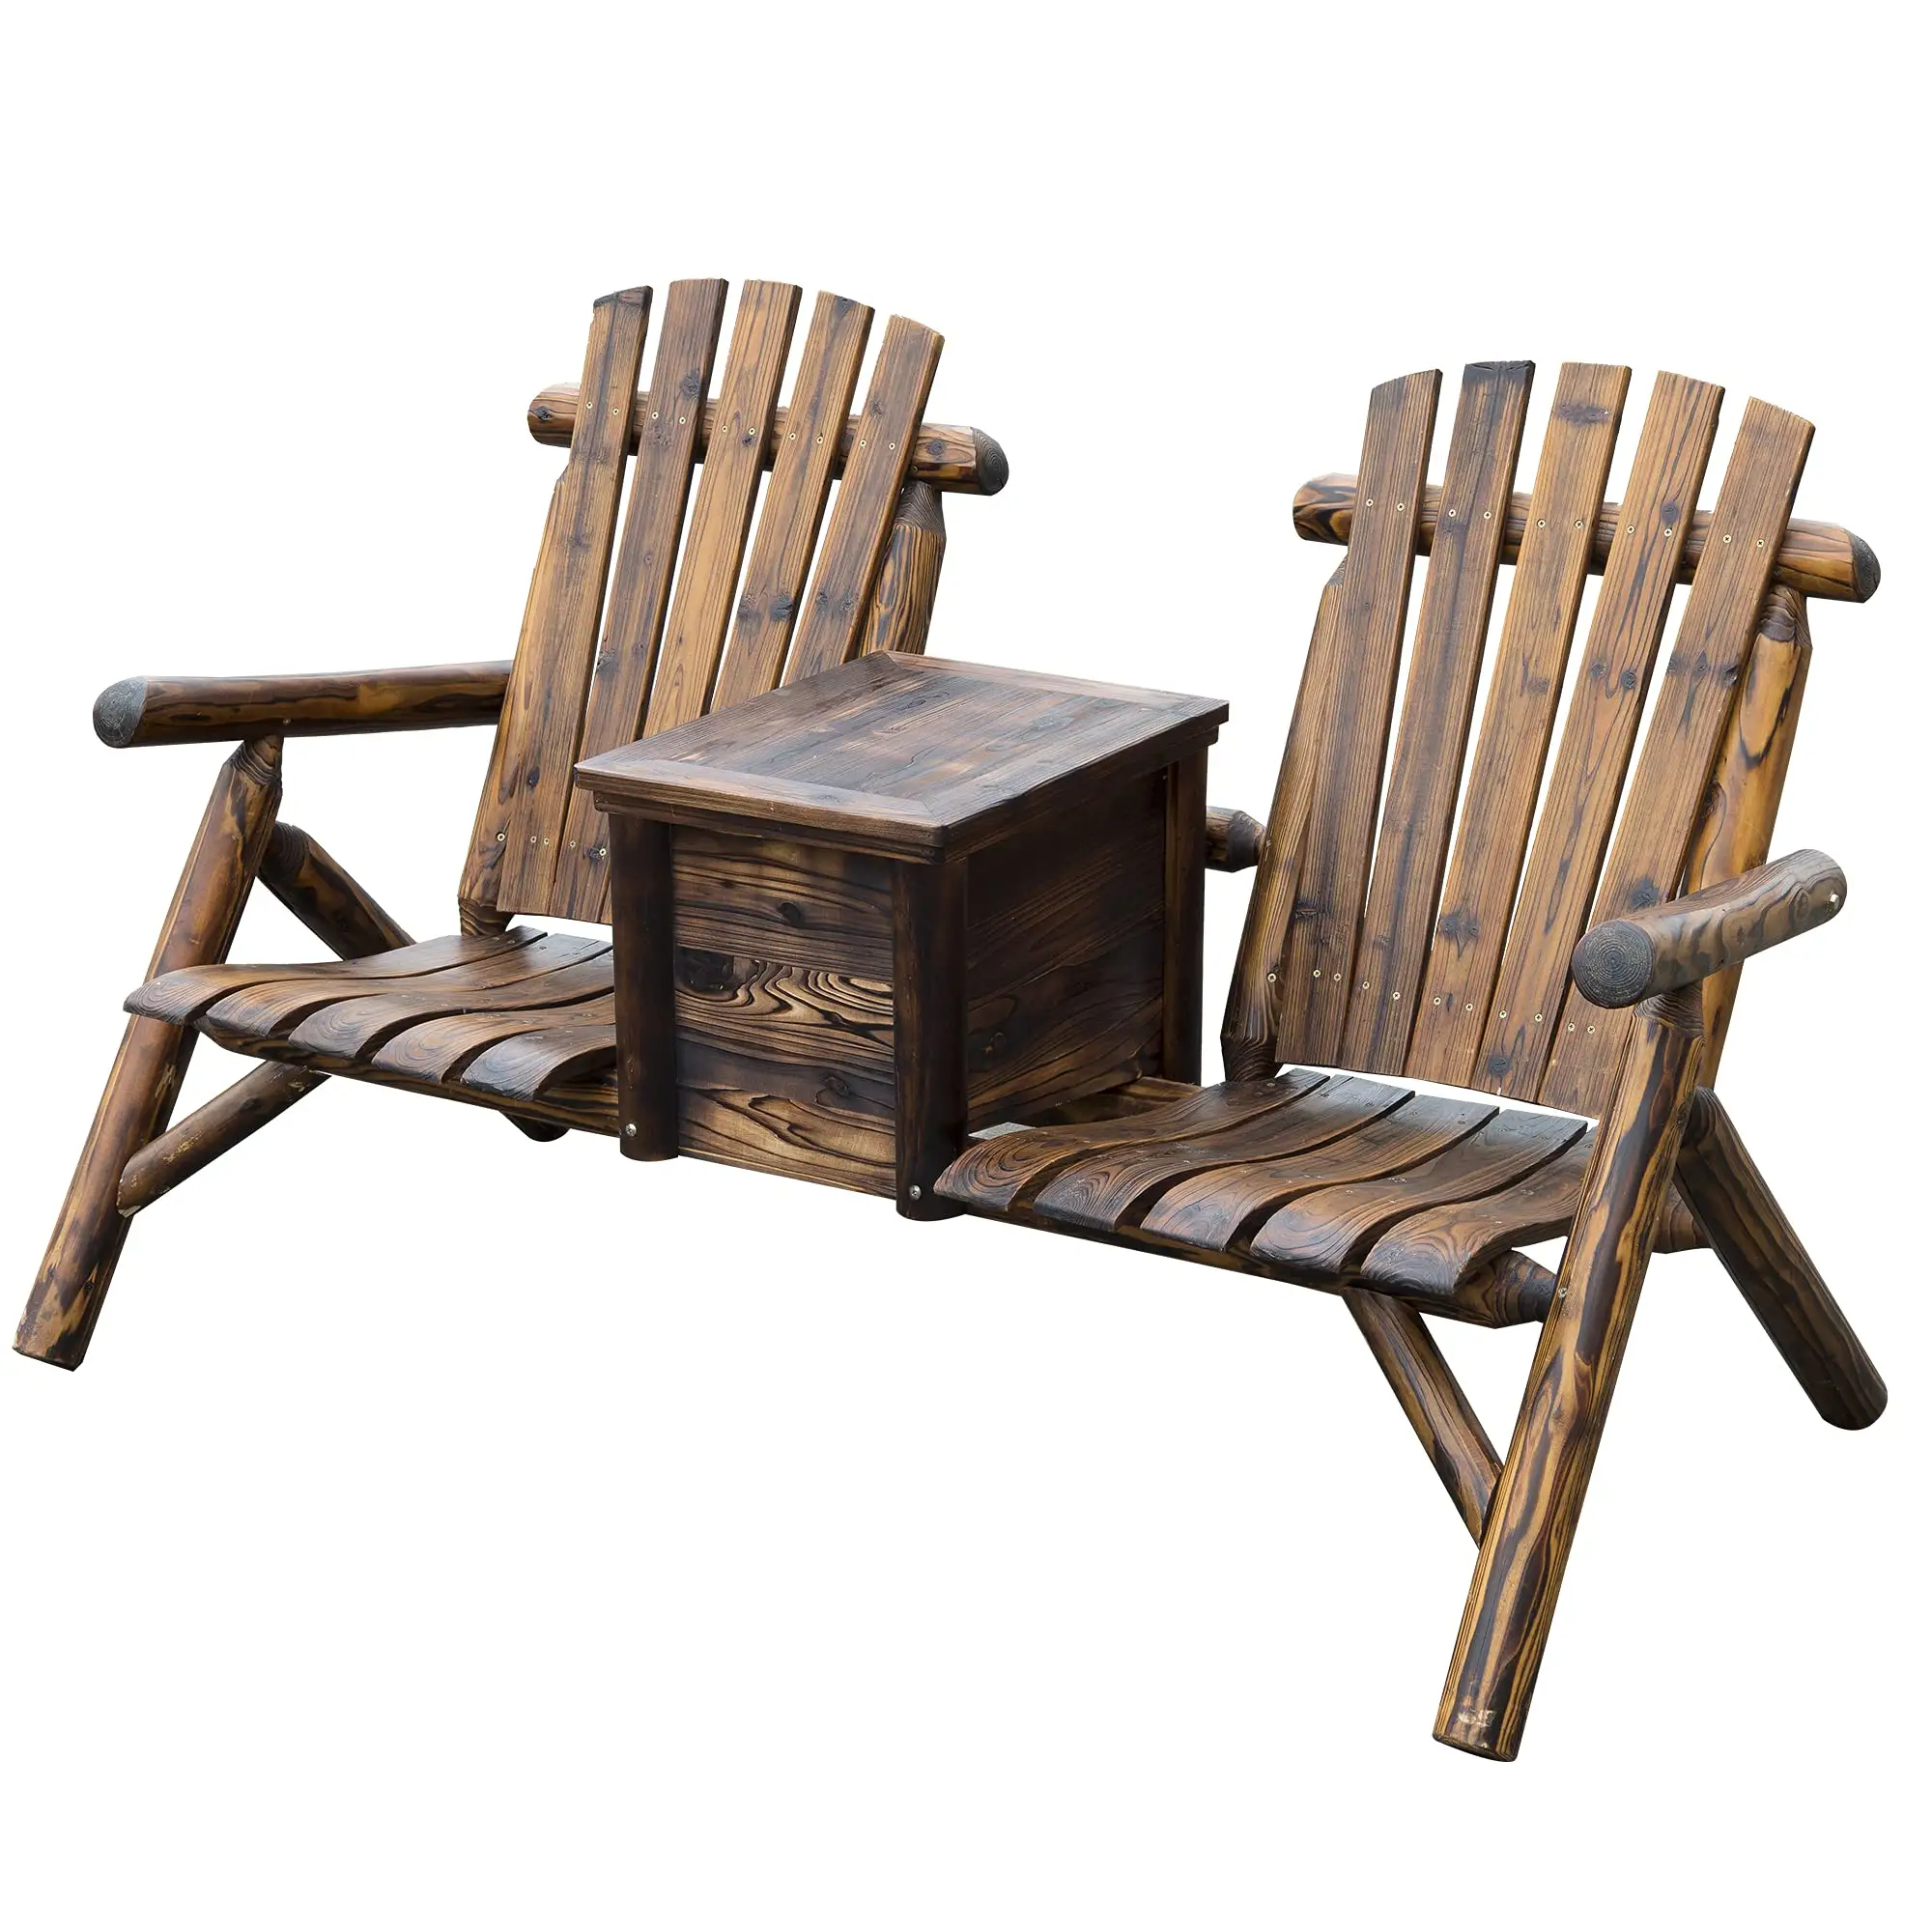 Лидер продаж, деревянный двойной стул Adirondack для влюбленных со встроенным ведром для льда, деревенский деревянный садовый стул для крыльца на заднем дворе